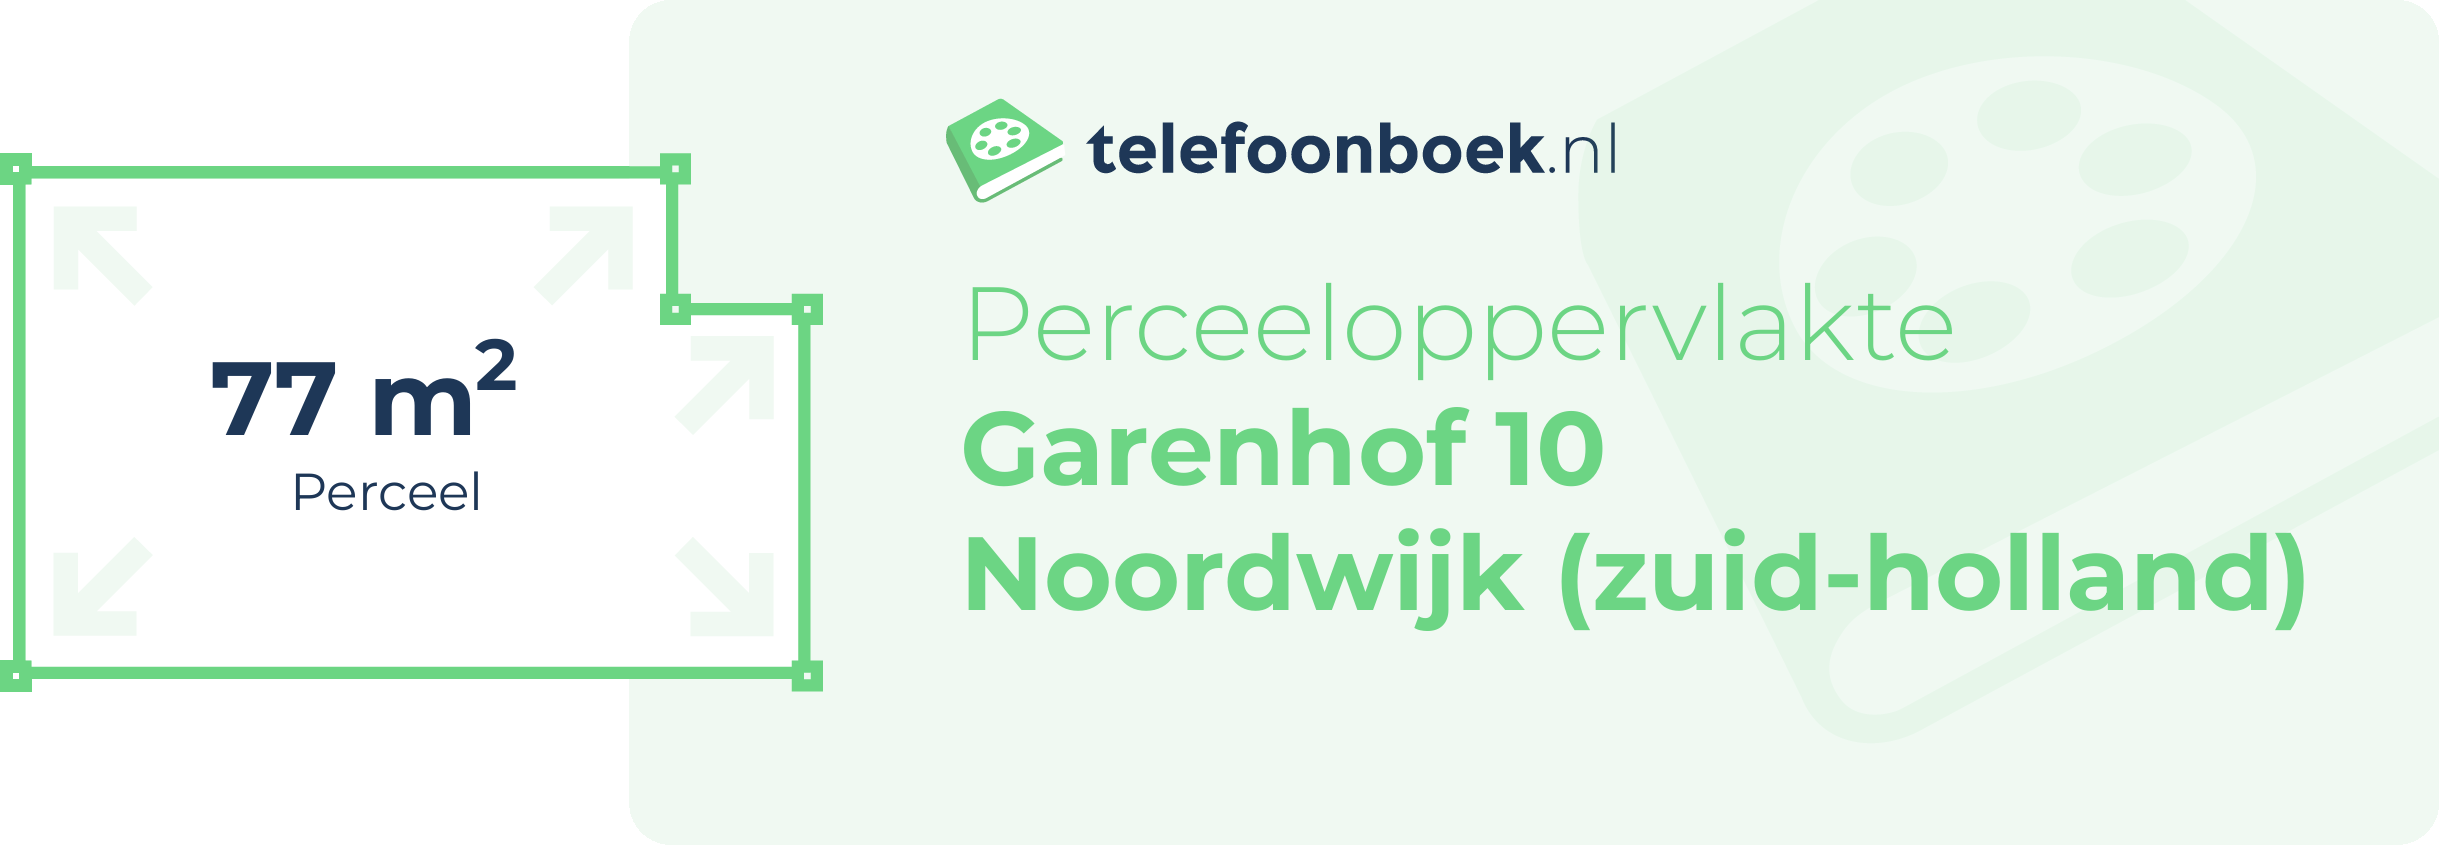 Perceeloppervlakte Garenhof 10 Noordwijk (Zuid-Holland)